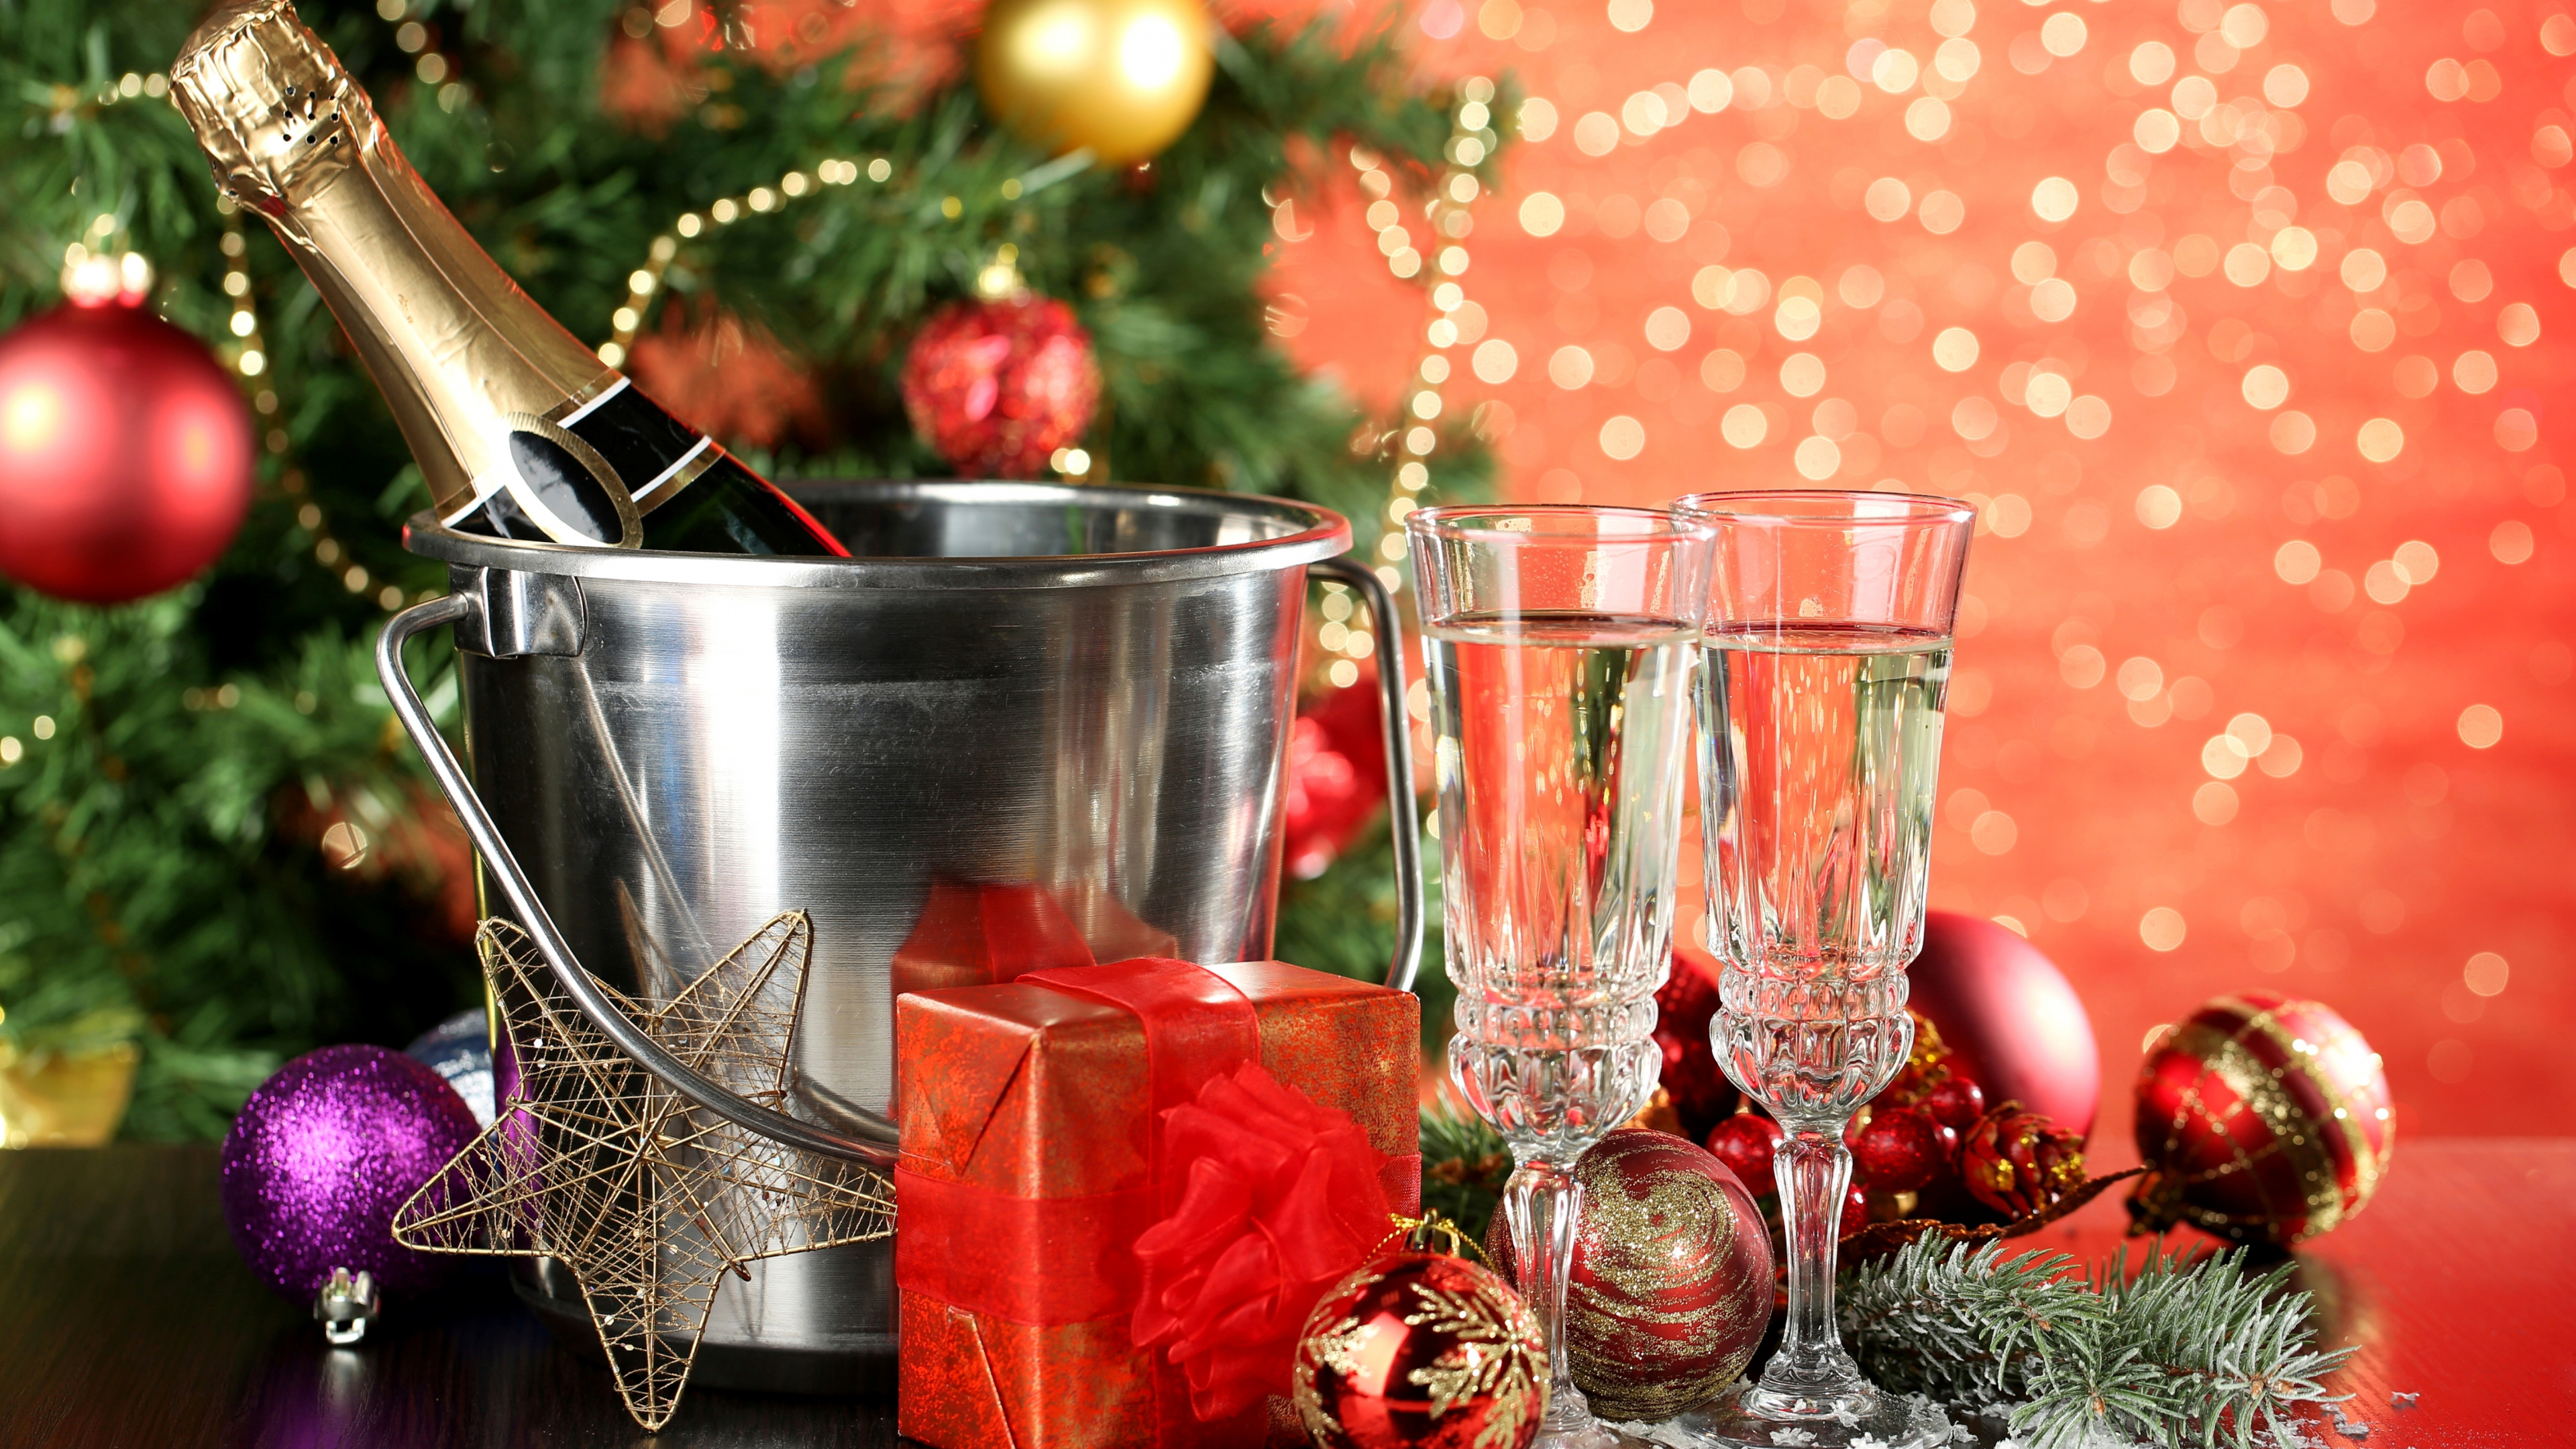 香槟, 新的一年, 圣诞节的装饰品, 圣诞装饰, 圣诞节 壁纸 3840x2160 允许